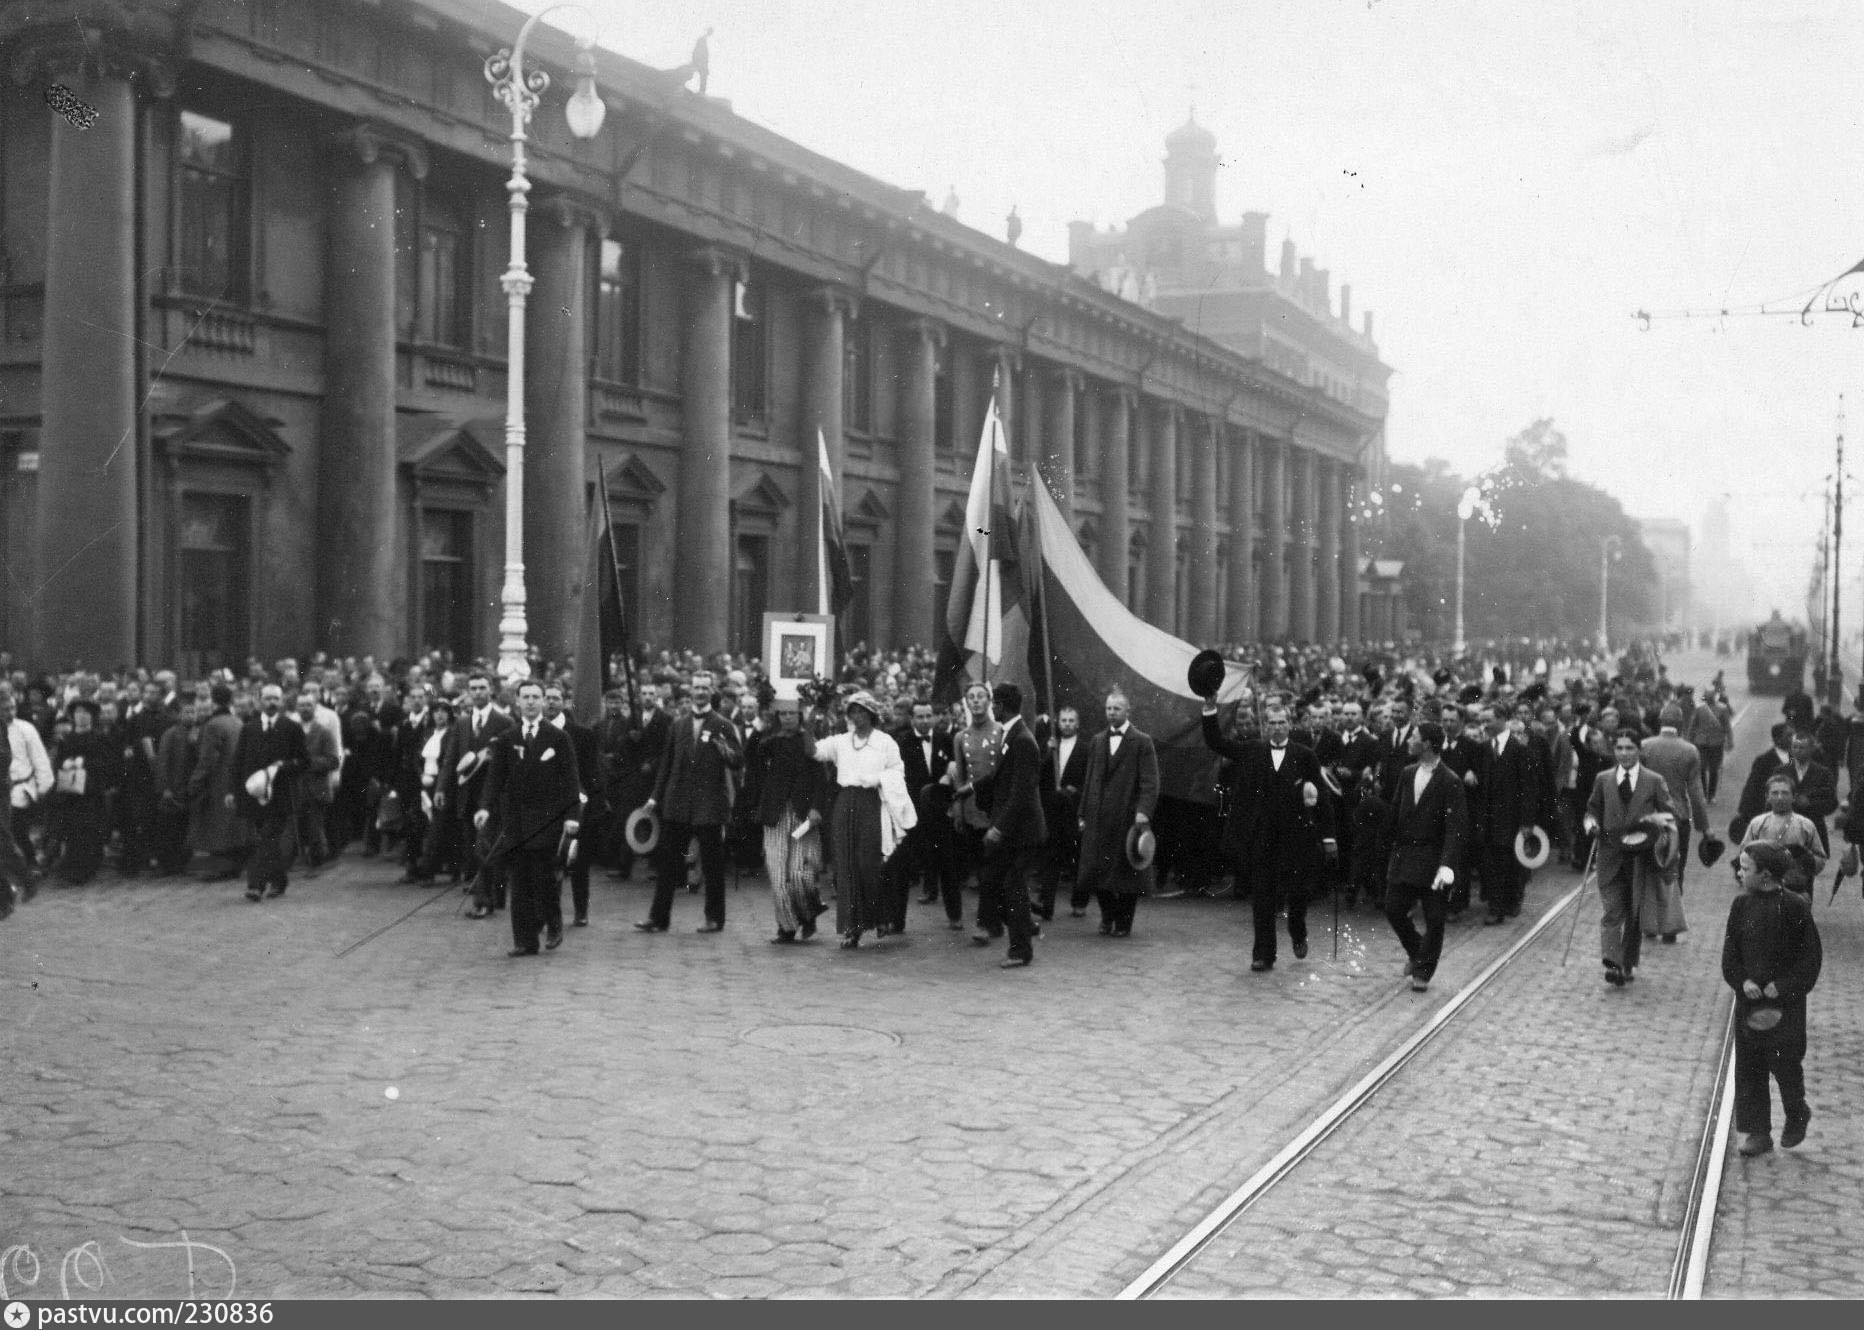 Патриотический подъем народа. Дворцовая площадь объявление войны 1914. Манифестация на Дворцовой площади 1914.